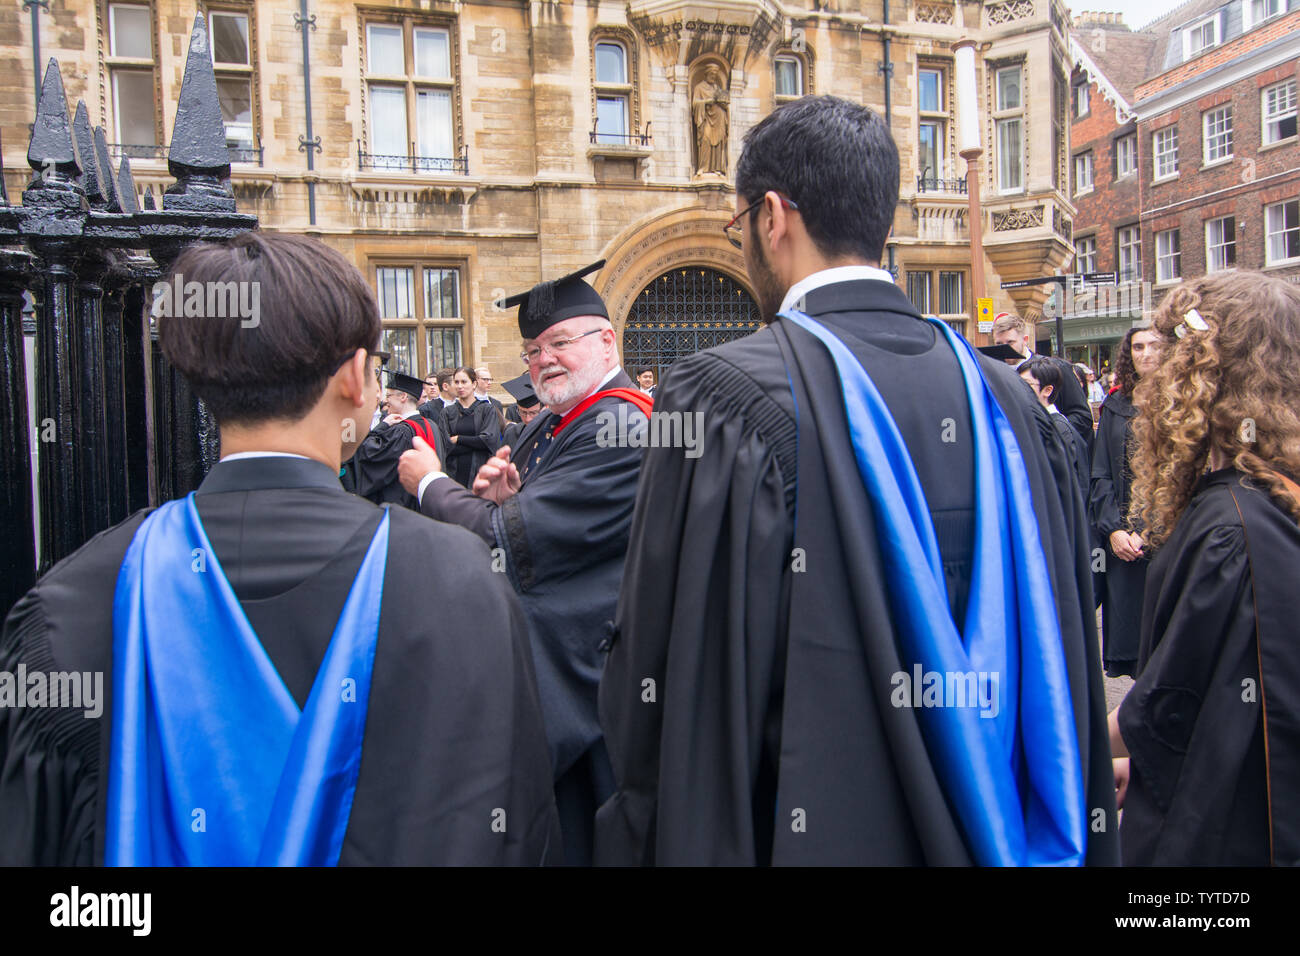 Aggregate 78+ university graduation gown colours